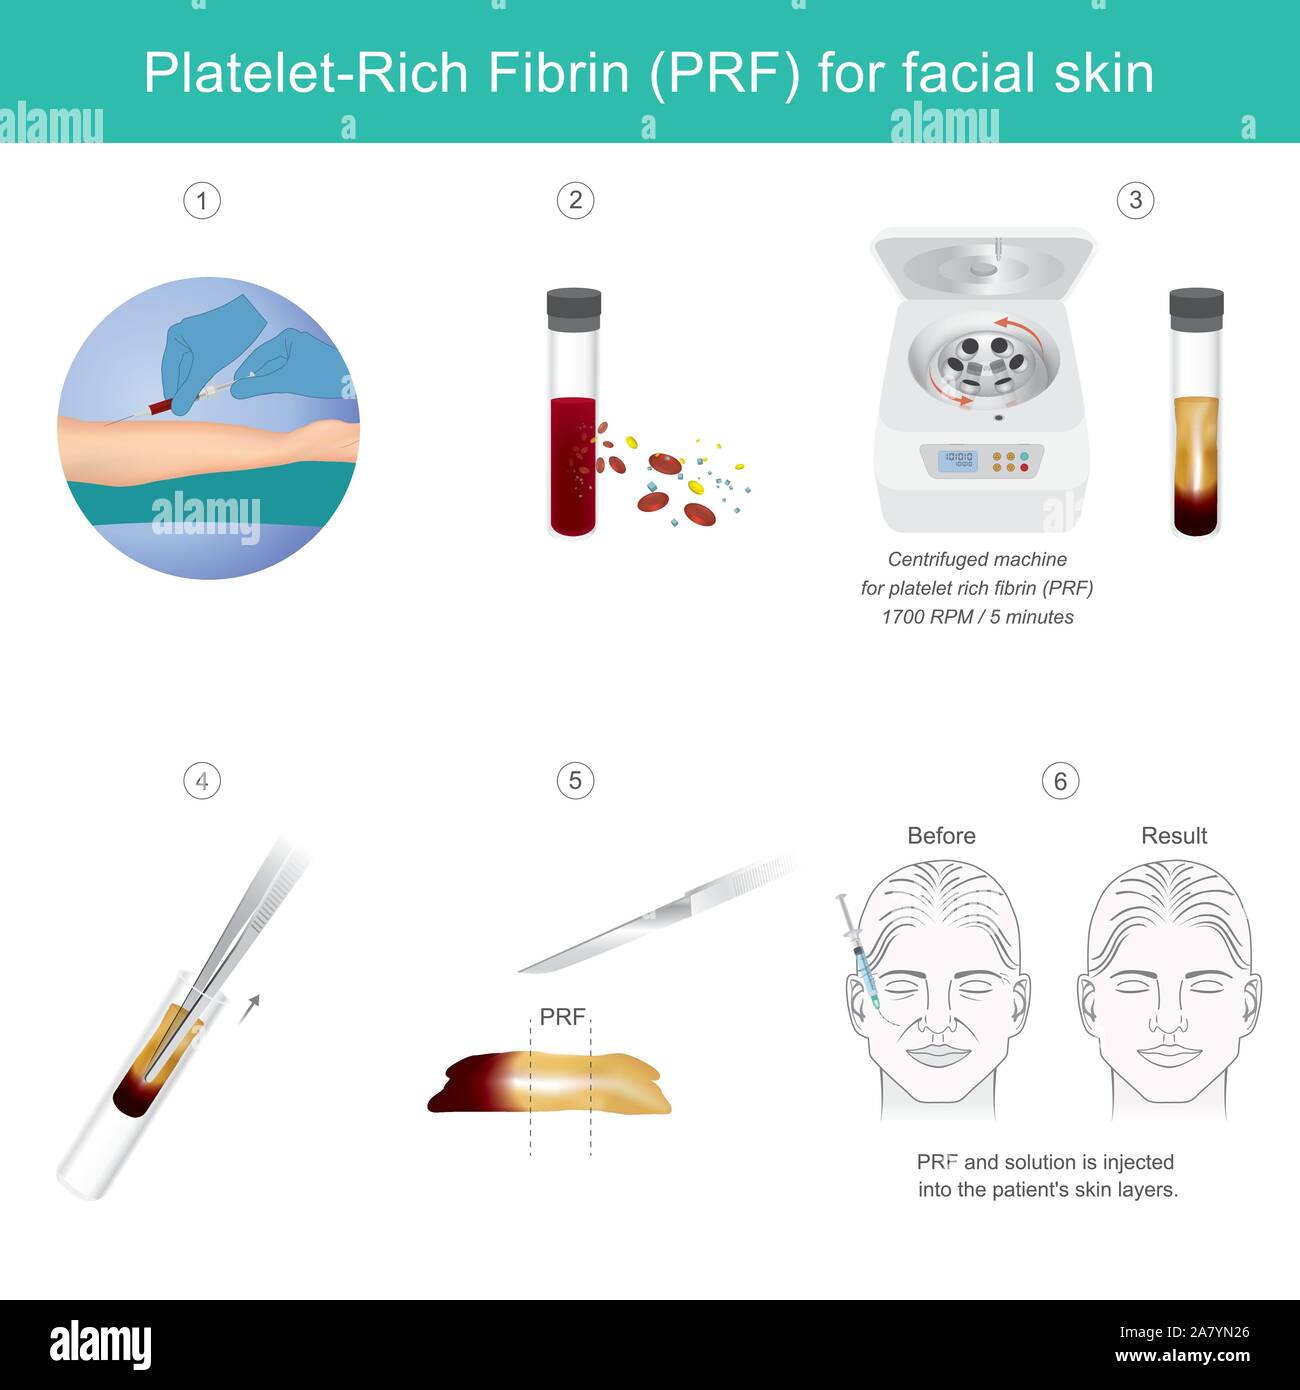 Thrombozyten-reichen Fibrin für die Gesichtshaut. Abbildung Technologie Behandlung ärztliche Gesichtshaut aus Stammzellen erklären, für Anti-aging Serum. Stock Vektor